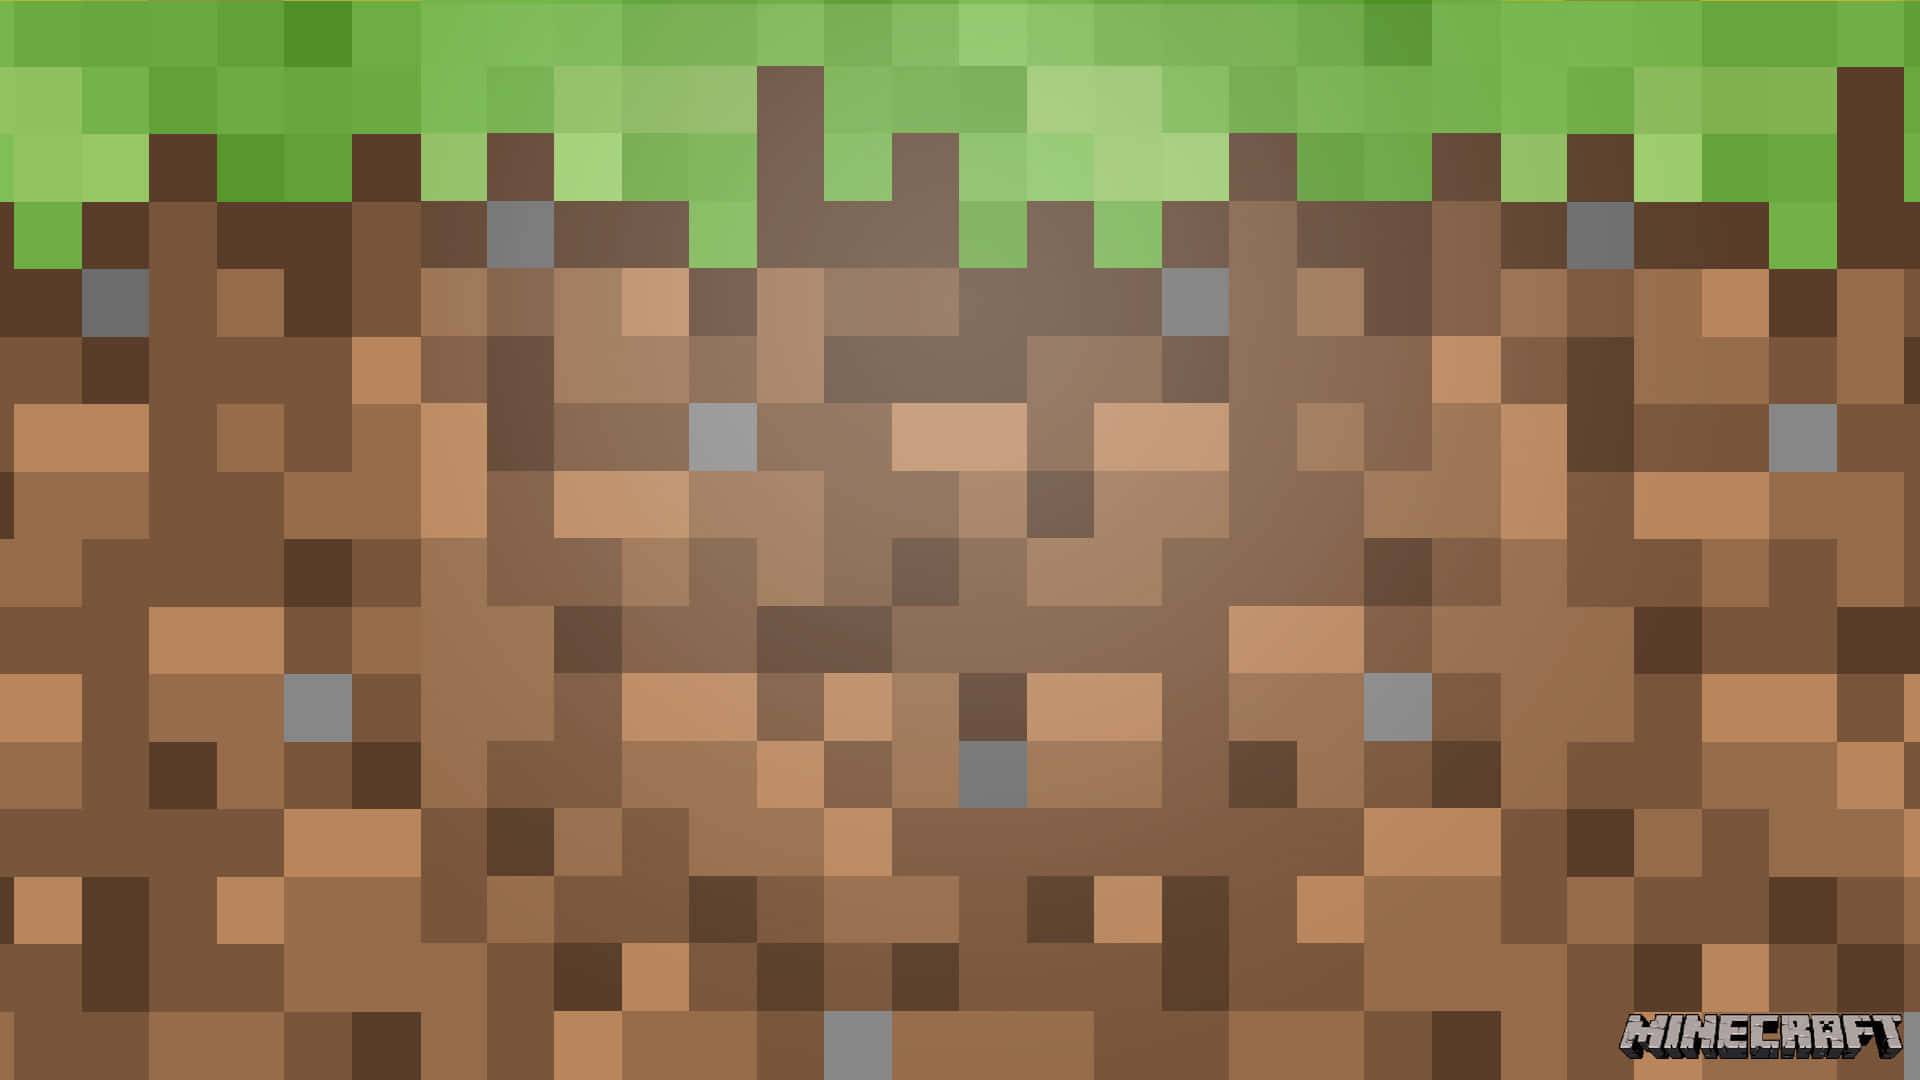 Et lys og levende landskab af Minecrafts græsplader. Wallpaper